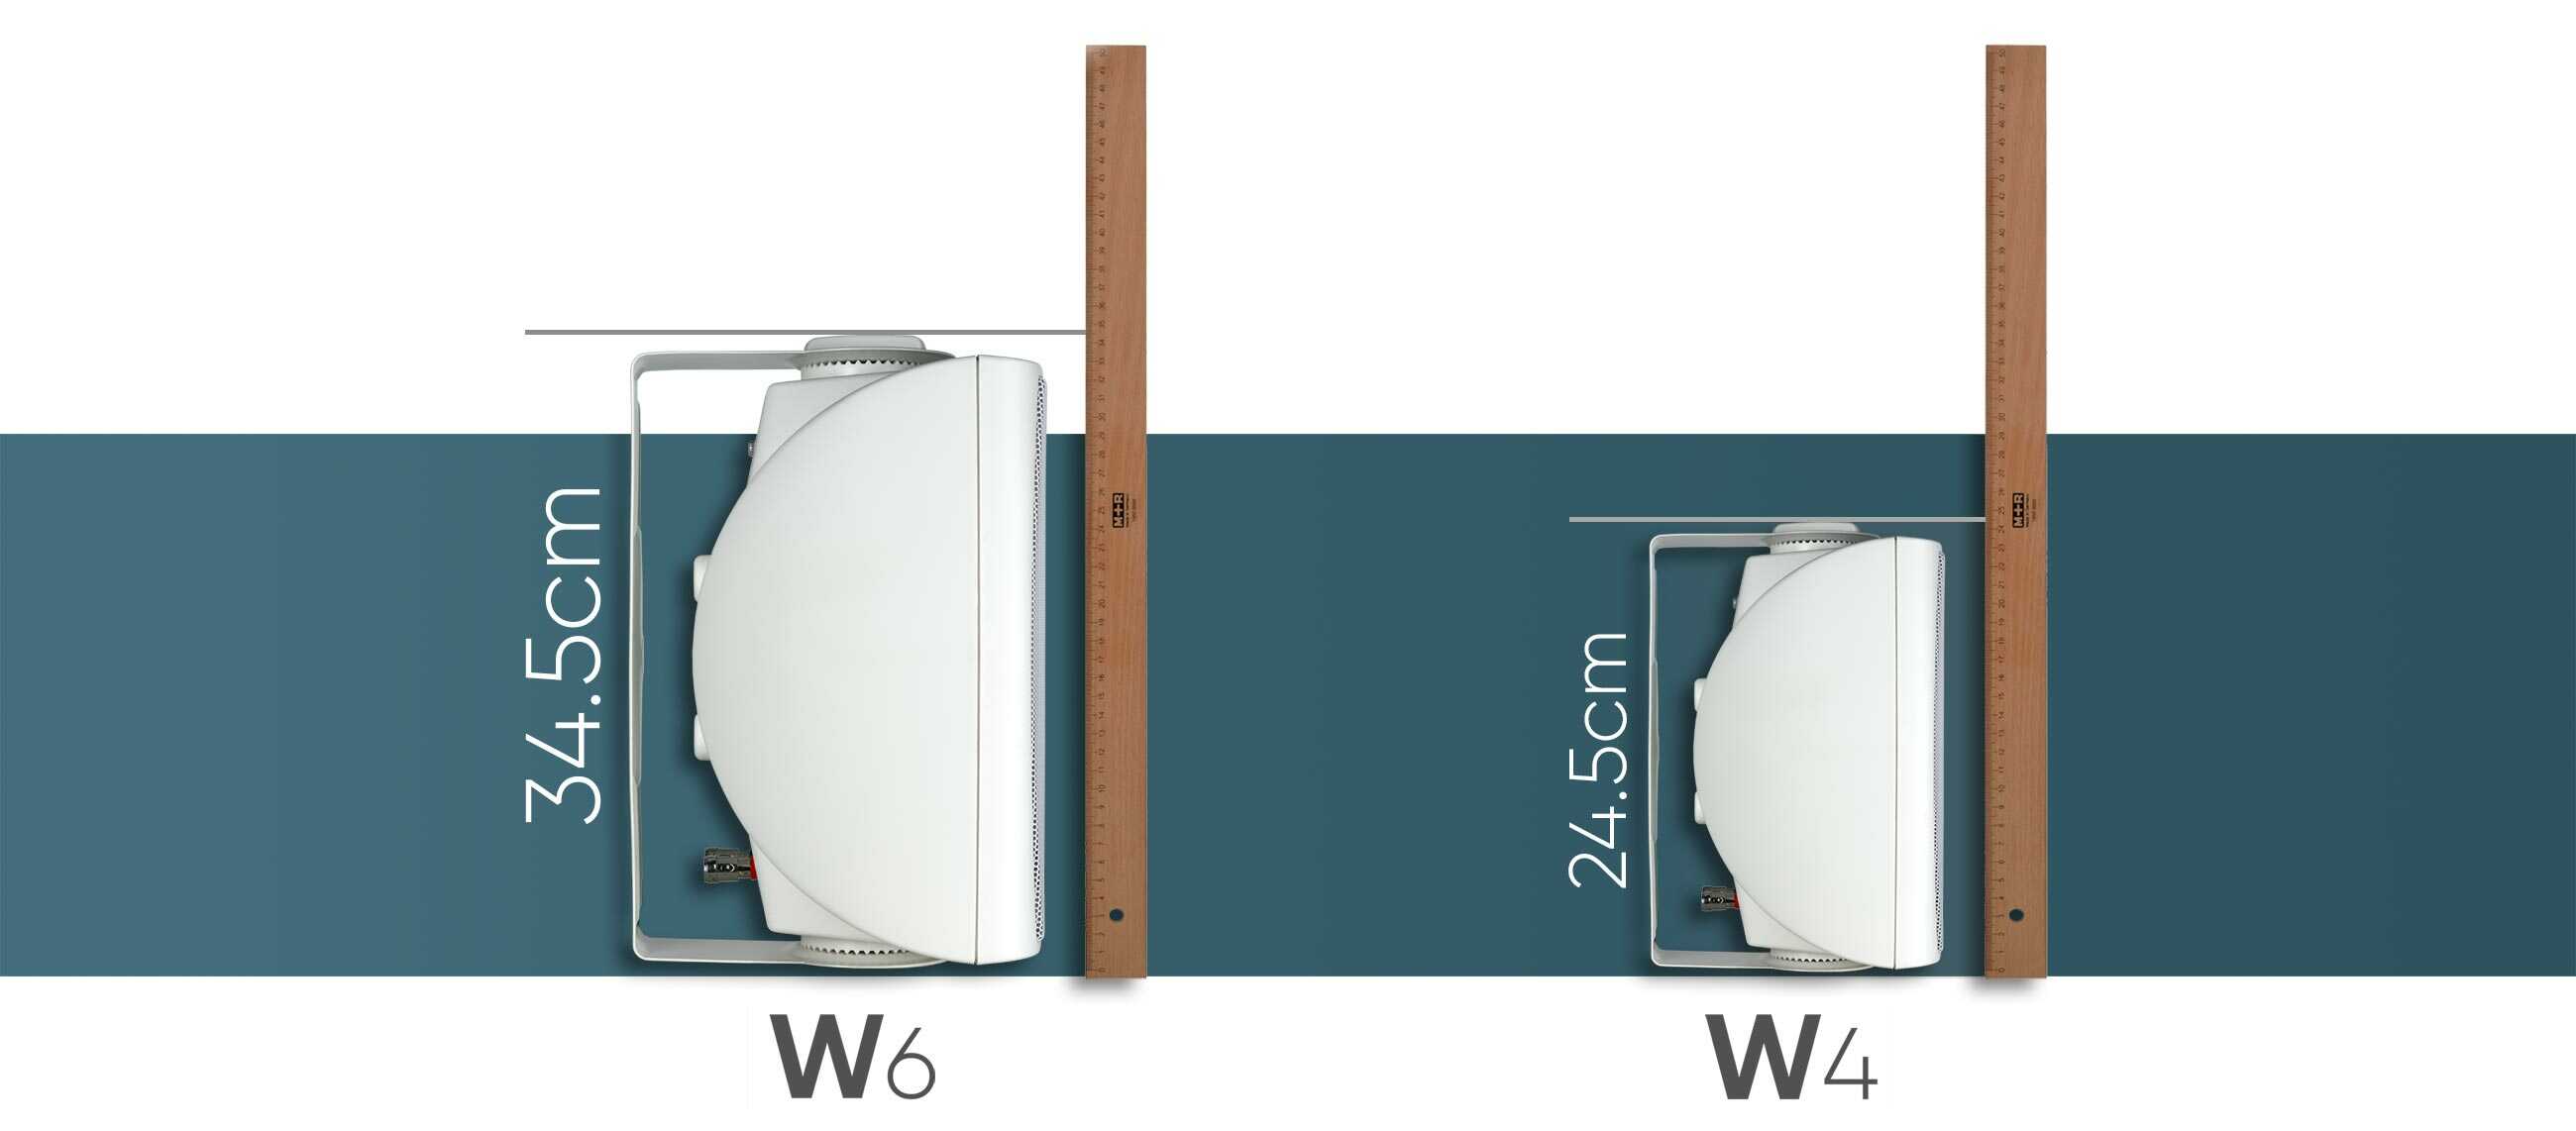 NEXT-Audiocom-w4-w6-size-dimensions